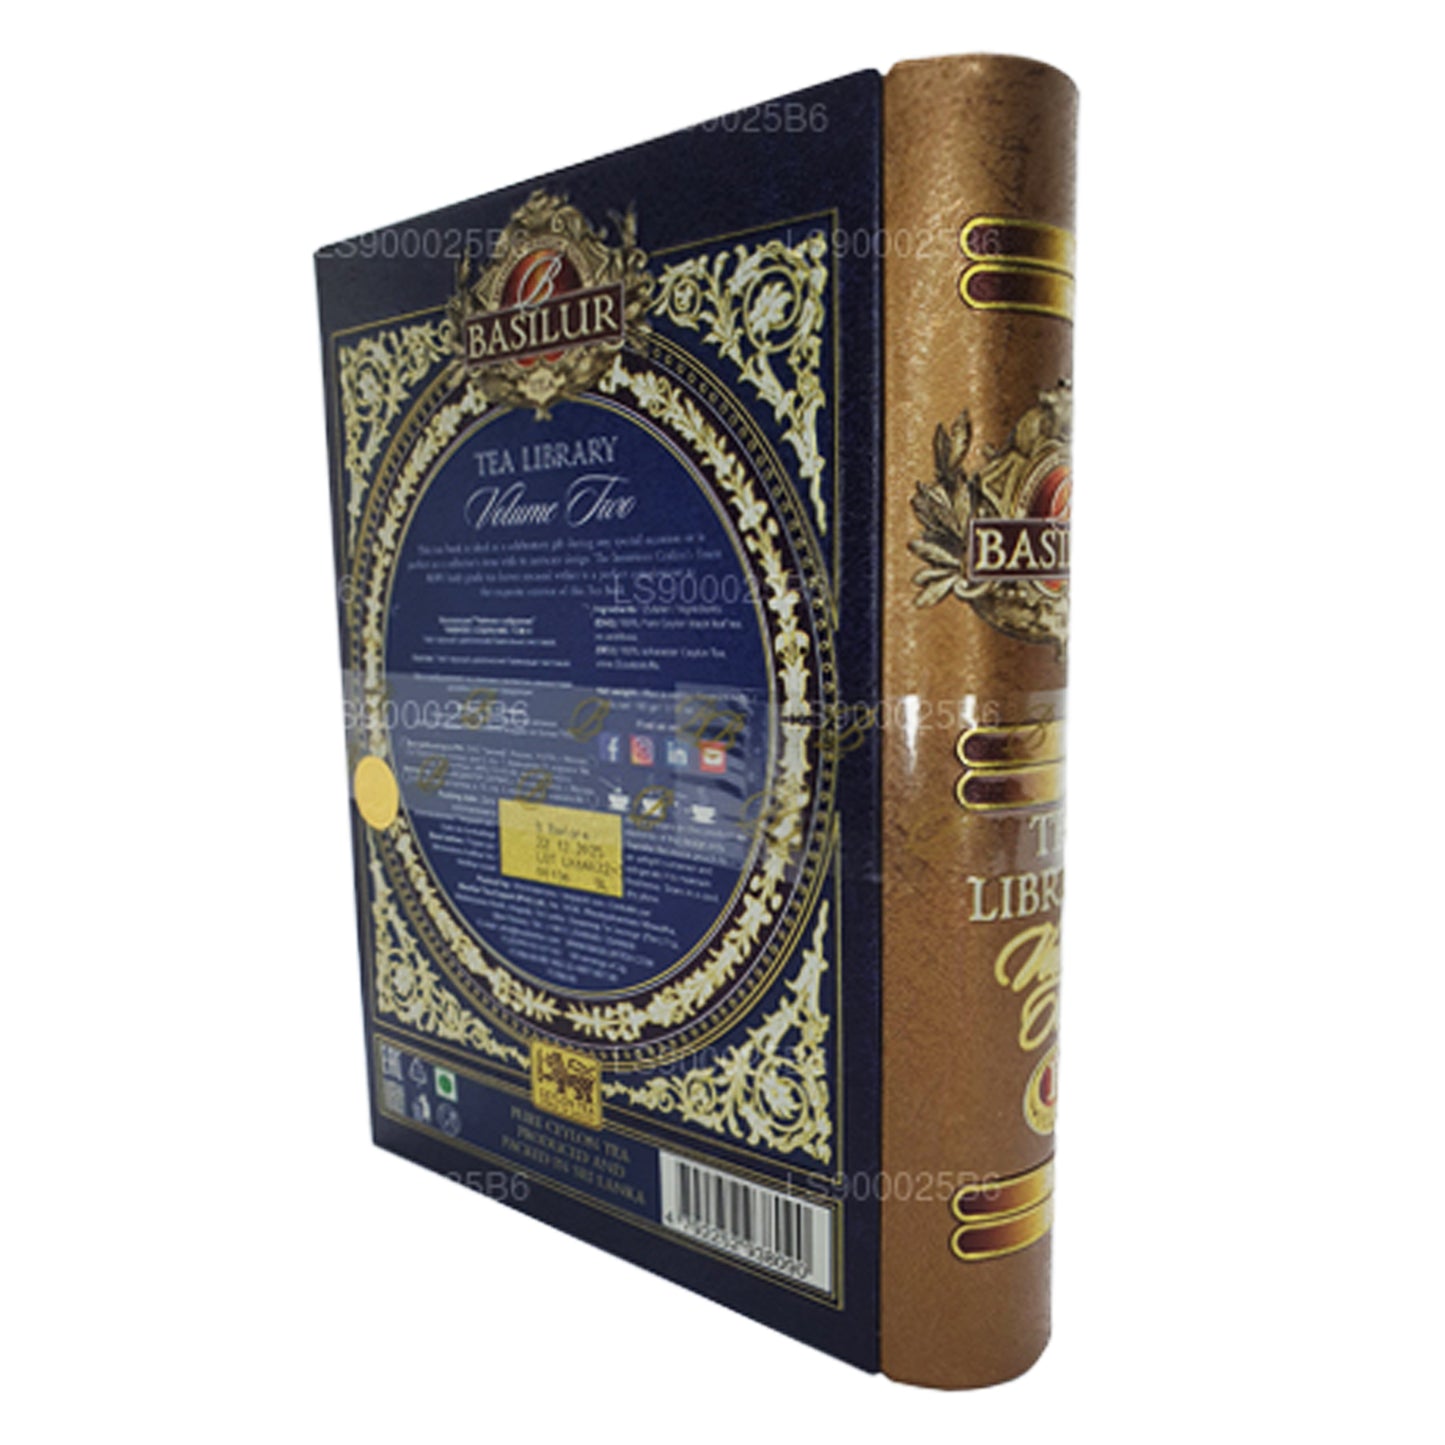 Carrito para libros de té Basilur «Tea Library Volume Two» (100 g)